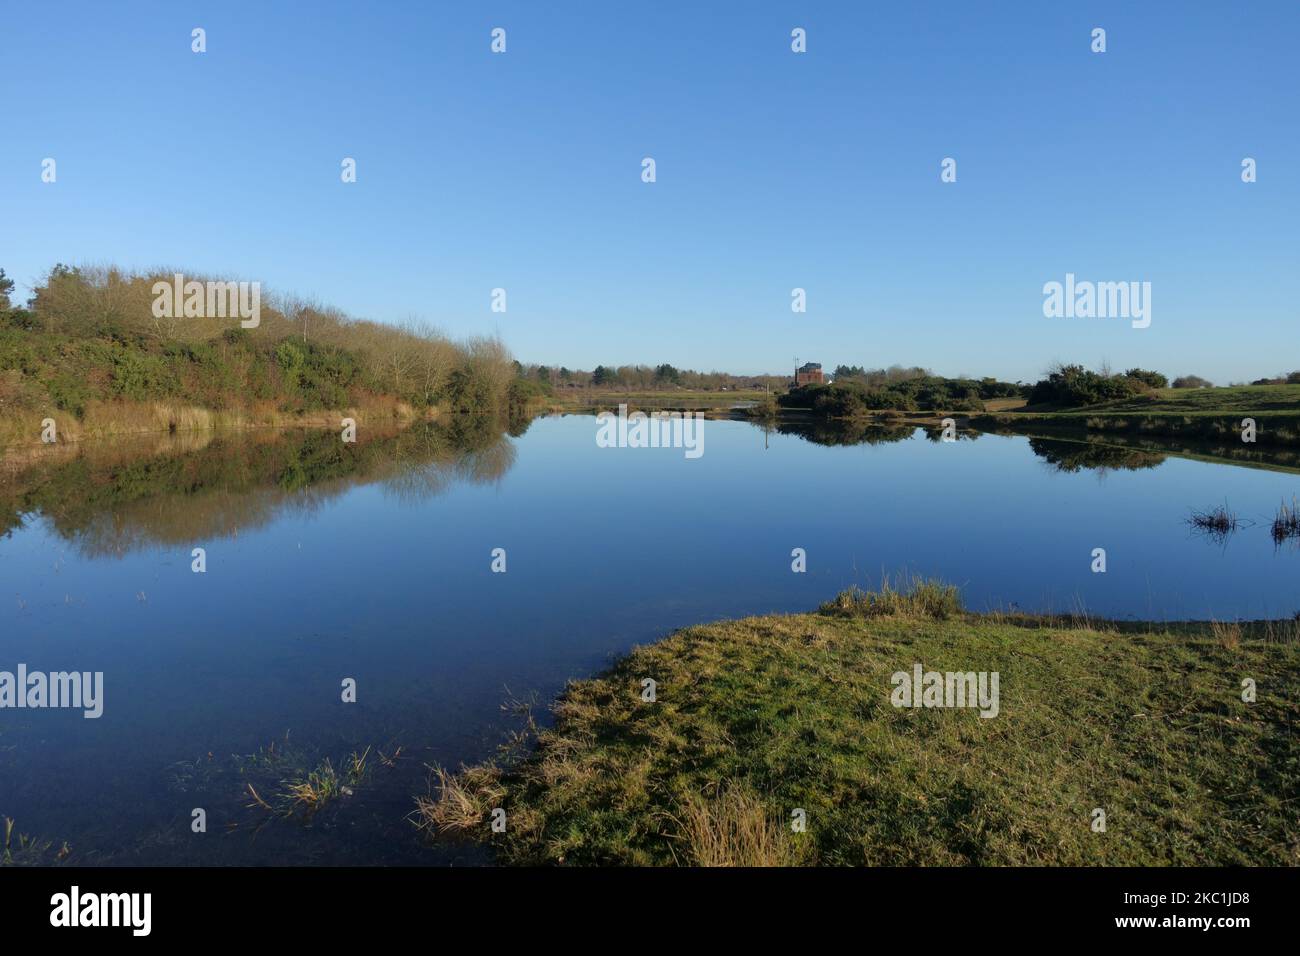 Ein strahlender Wintertag mit spiegelglatter Wasseroberfläche auf den Seen, die sich im Naturschutzgebiet auf dem stillschweifenden Flugplatz am Greenham Common Airbase nea gebildet haben Stockfoto